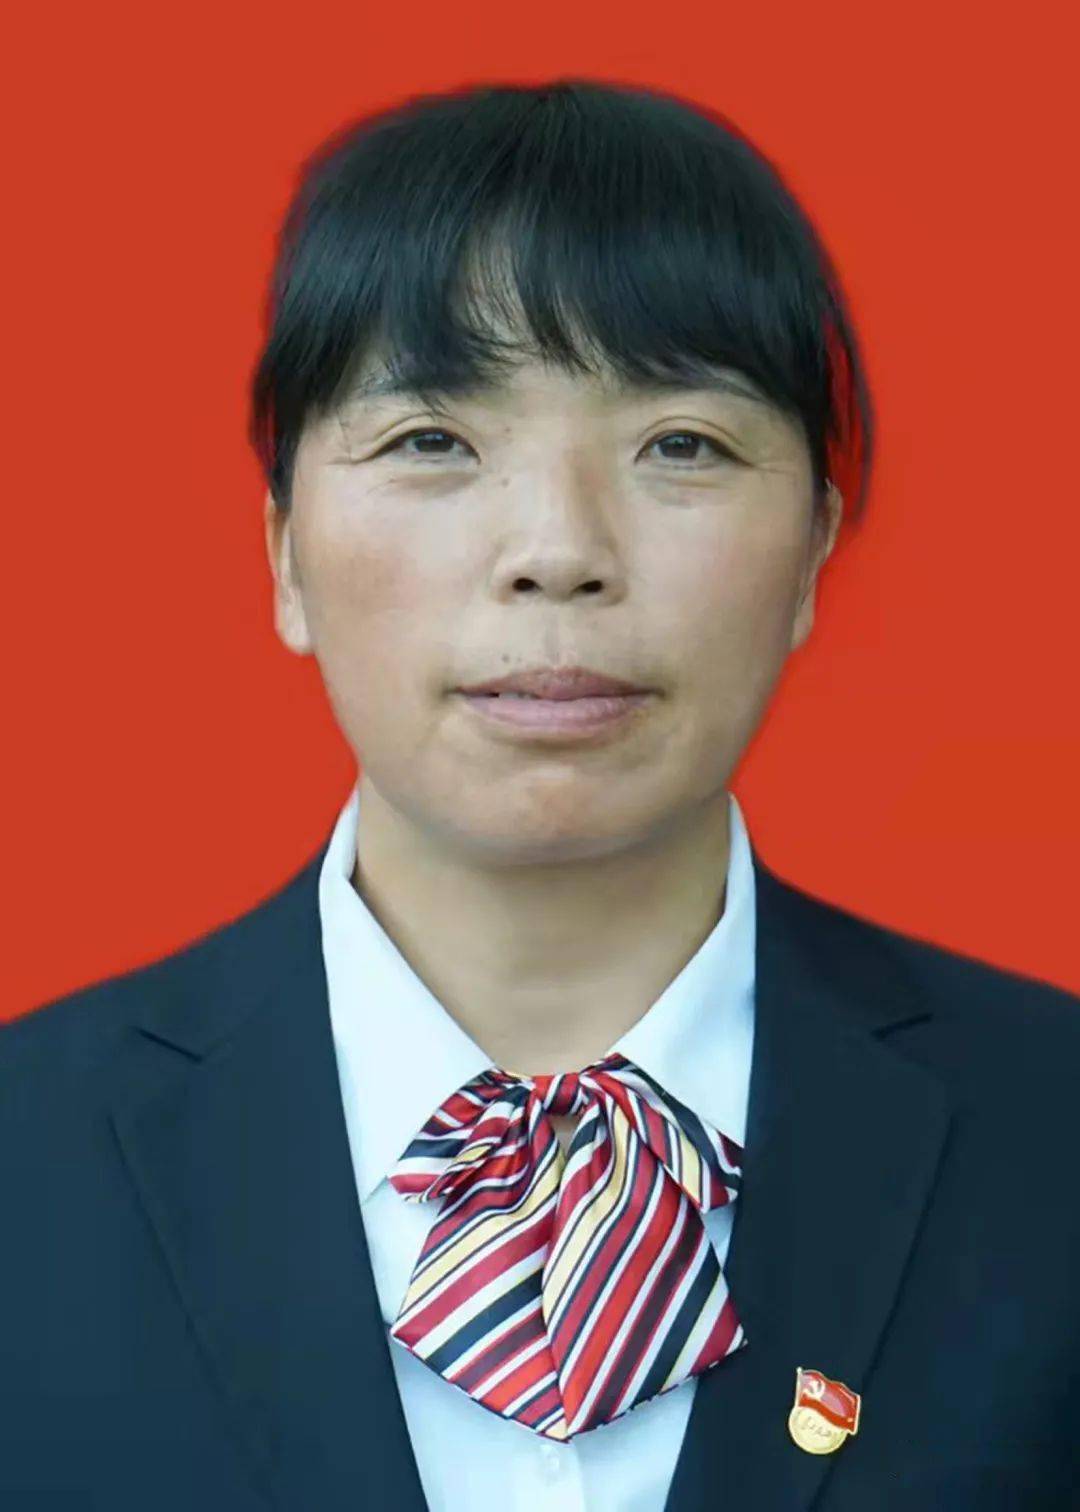 锁银菊祖正勇:47岁,中共党员,昭阳区大山包中学教师,先后获得区级